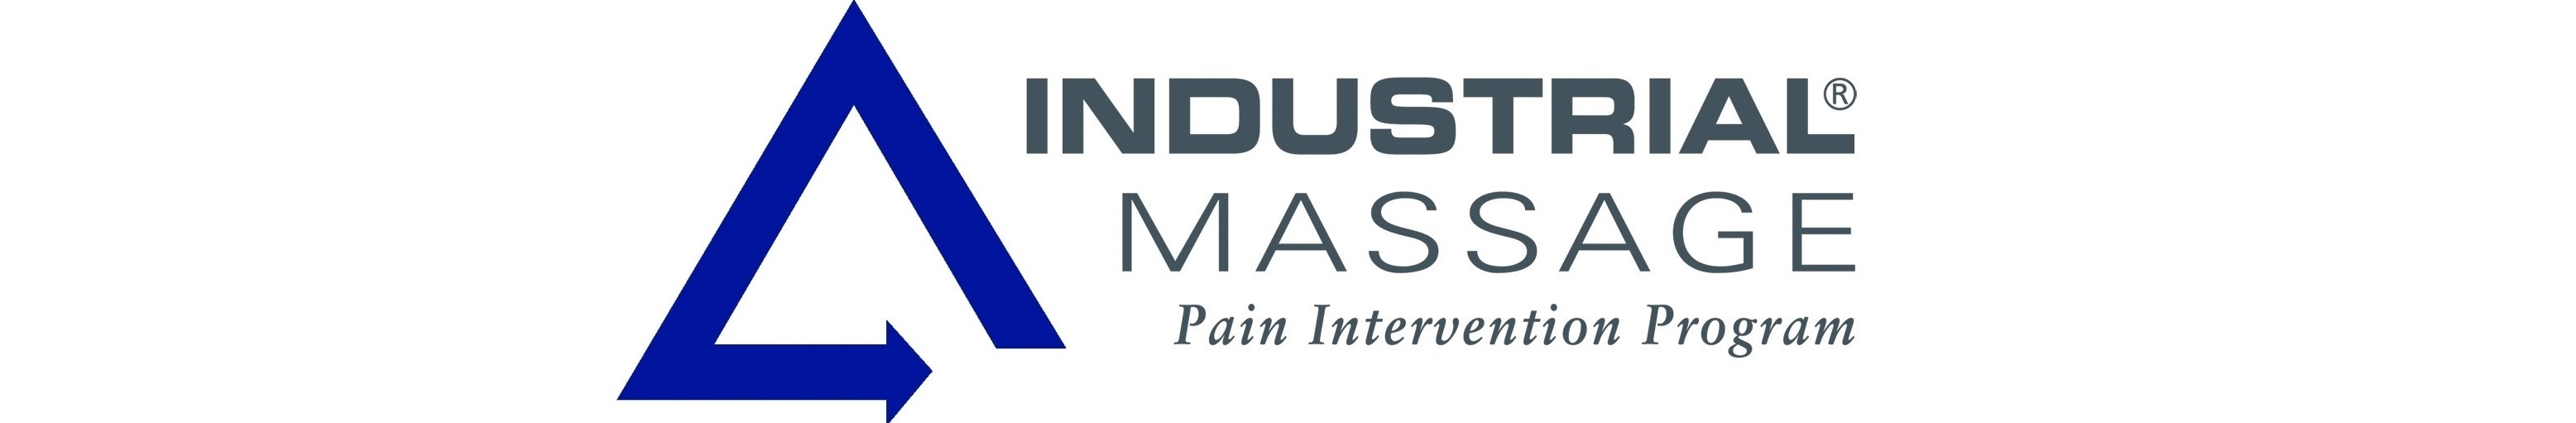 Industrial Massage